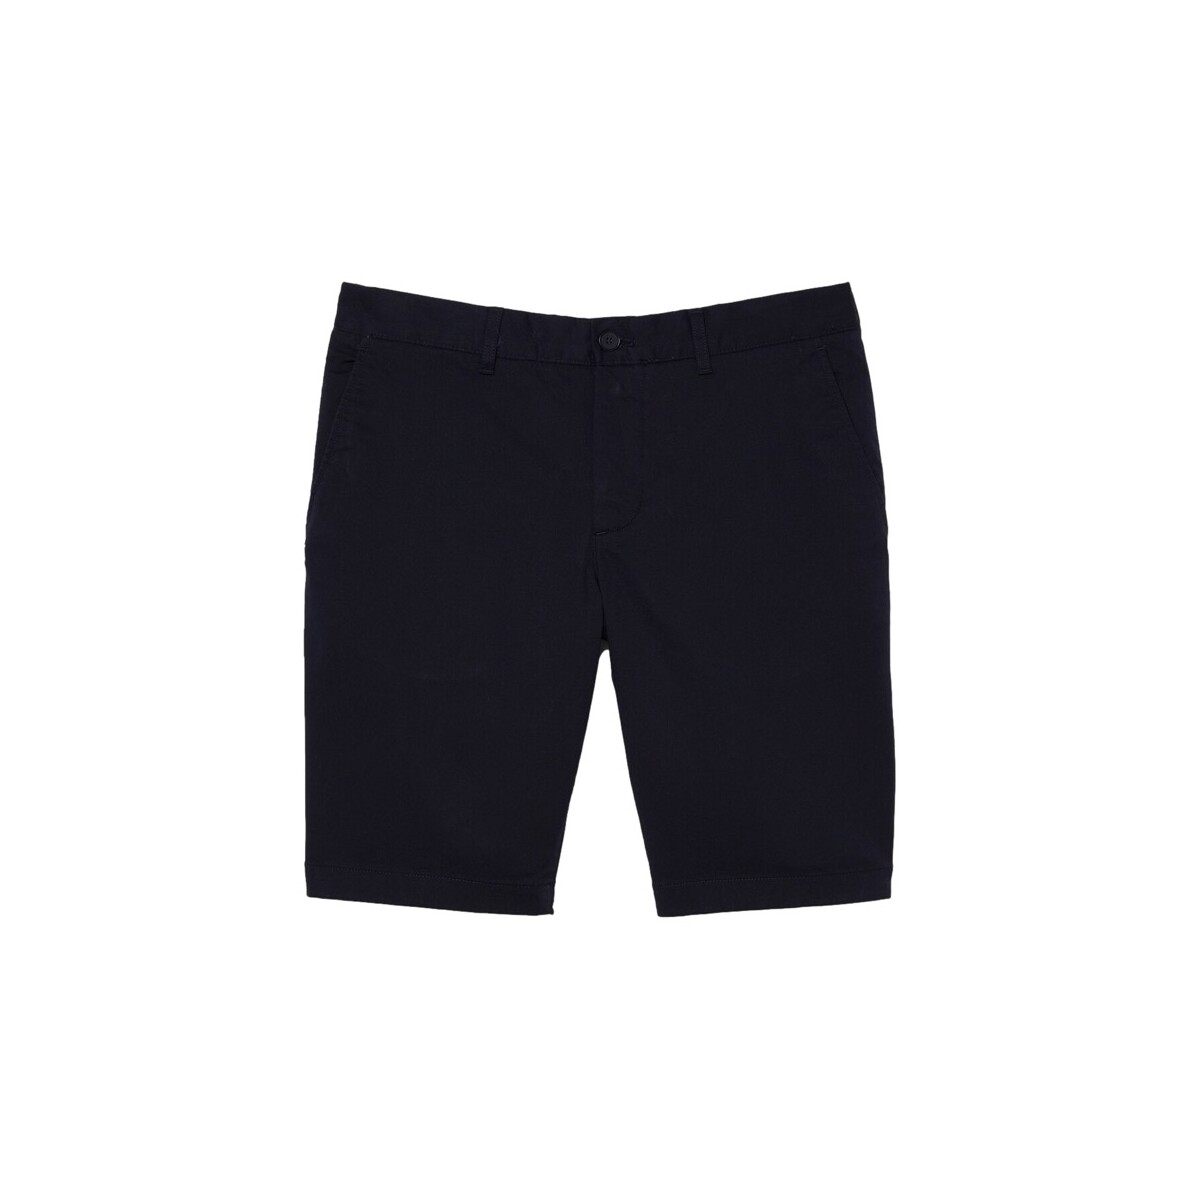 textil Hombre Shorts / Bermudas Lacoste Slim Fit Shorts - Blue Marine Azul